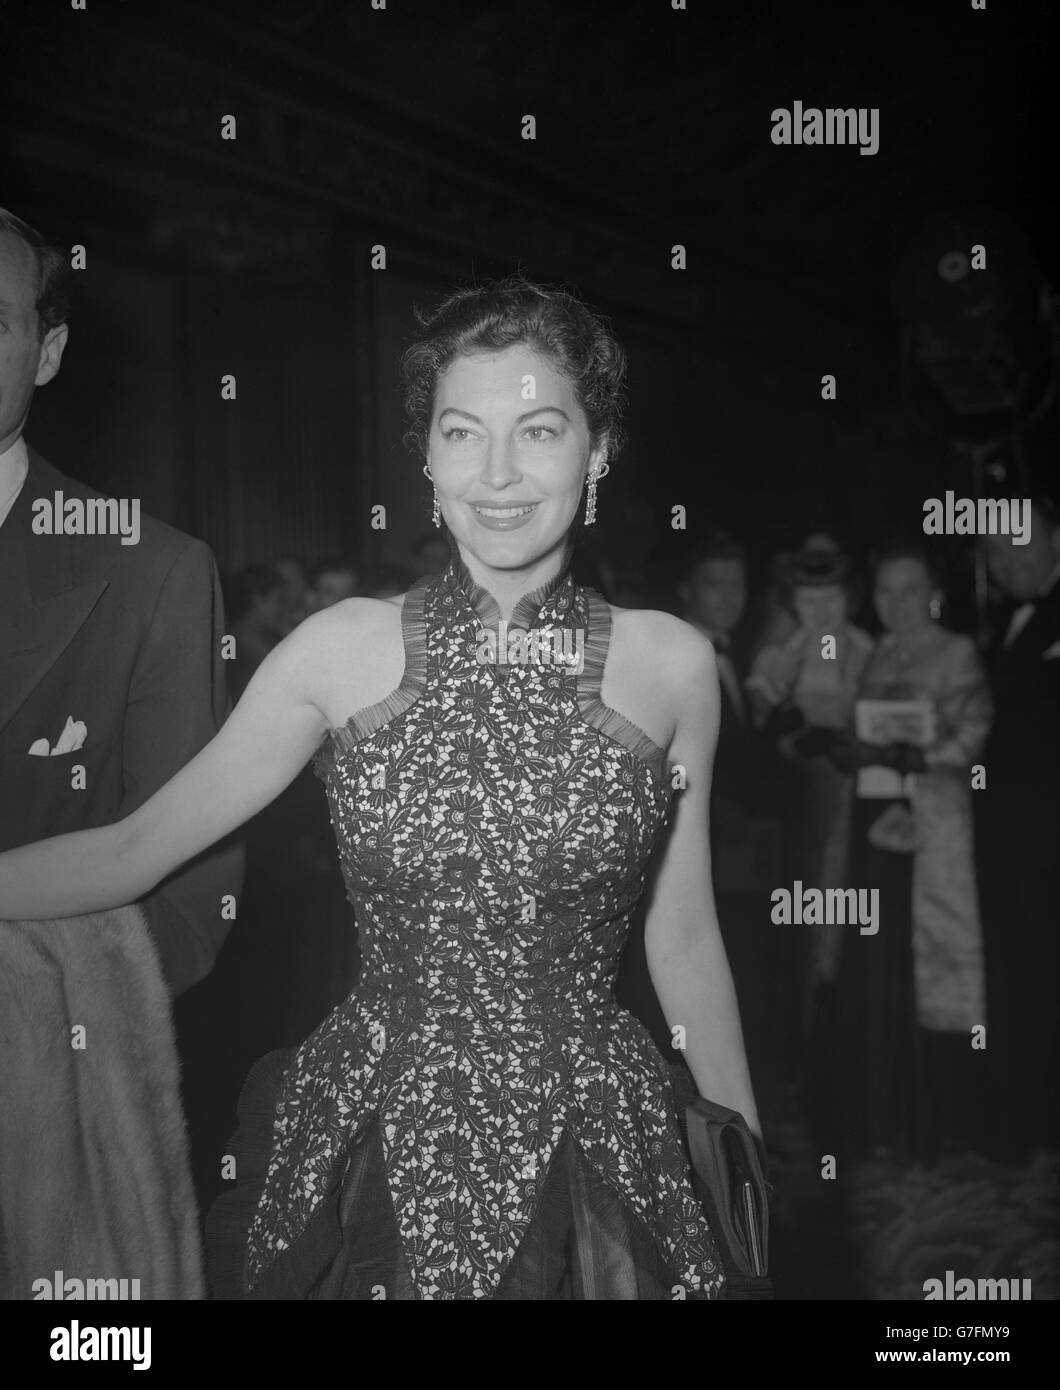 L'actrice hollywoodienne Ava Gardner, vêtue d'une robe à dentelle, s'est coupée aux épaules et bordée de filet, alors qu'elle assistait à la première mondiale caritative du film « The Red Beret » - Story of Britain's Airborne Forces - à l'Empire Theatre, Leicester Square, Londres. Banque D'Images